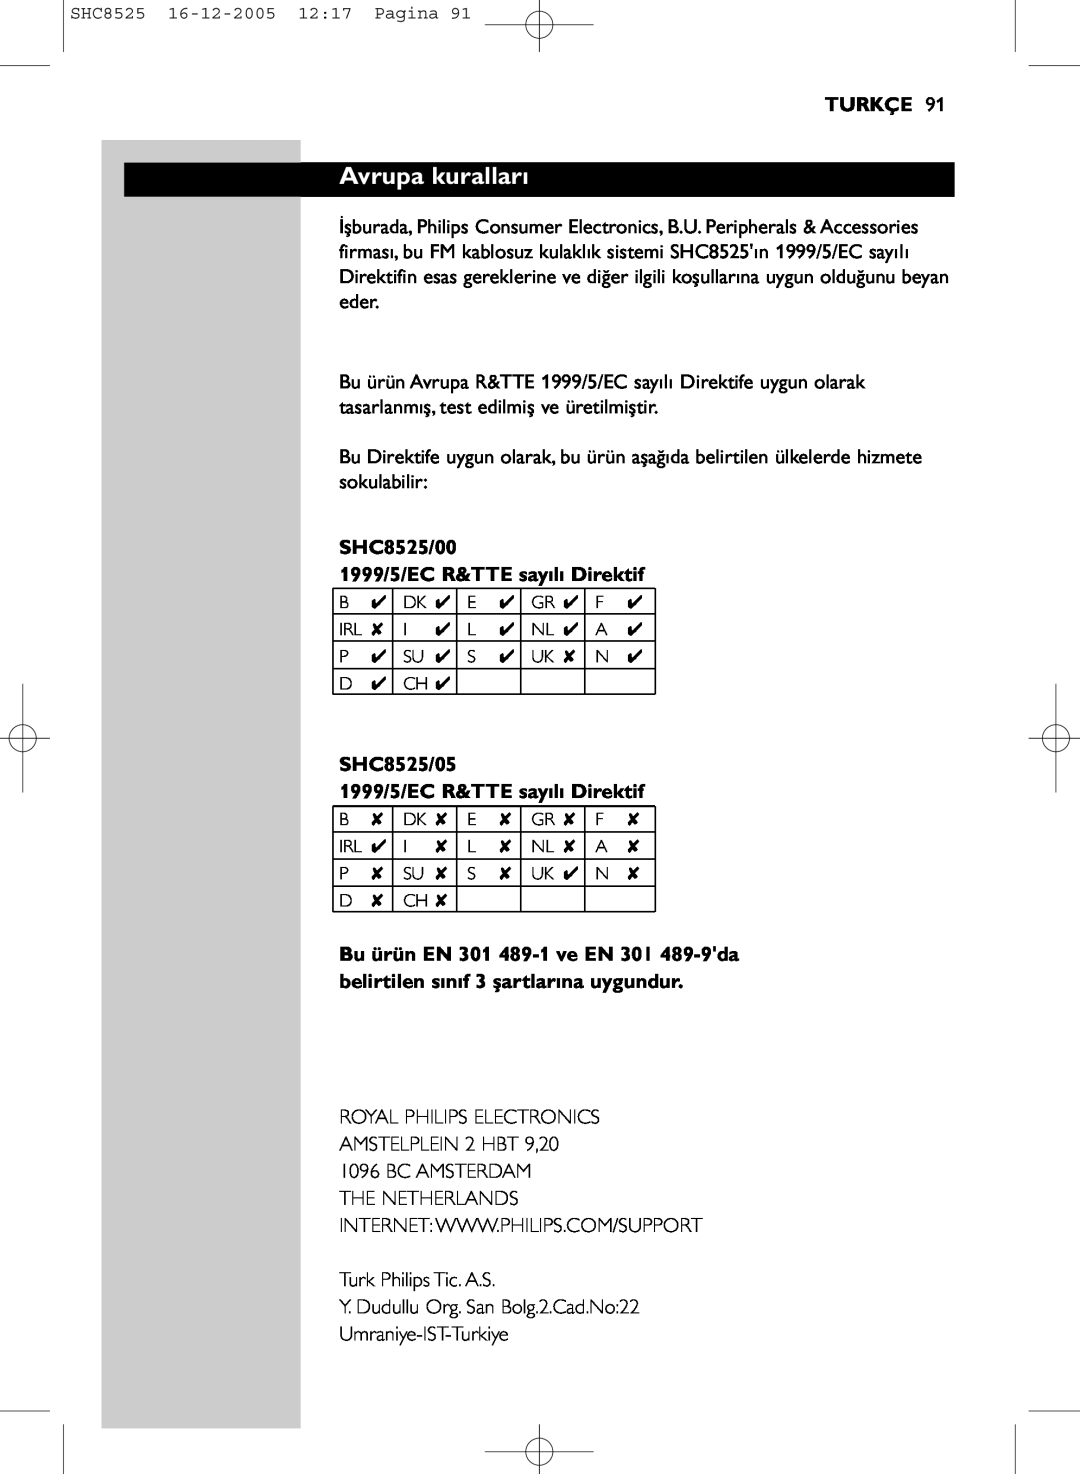 Event electronic manual Avrupa kuralları, Turkçe, SHC8525/00 1999/5/EC R&TTE sayılı Direktif 